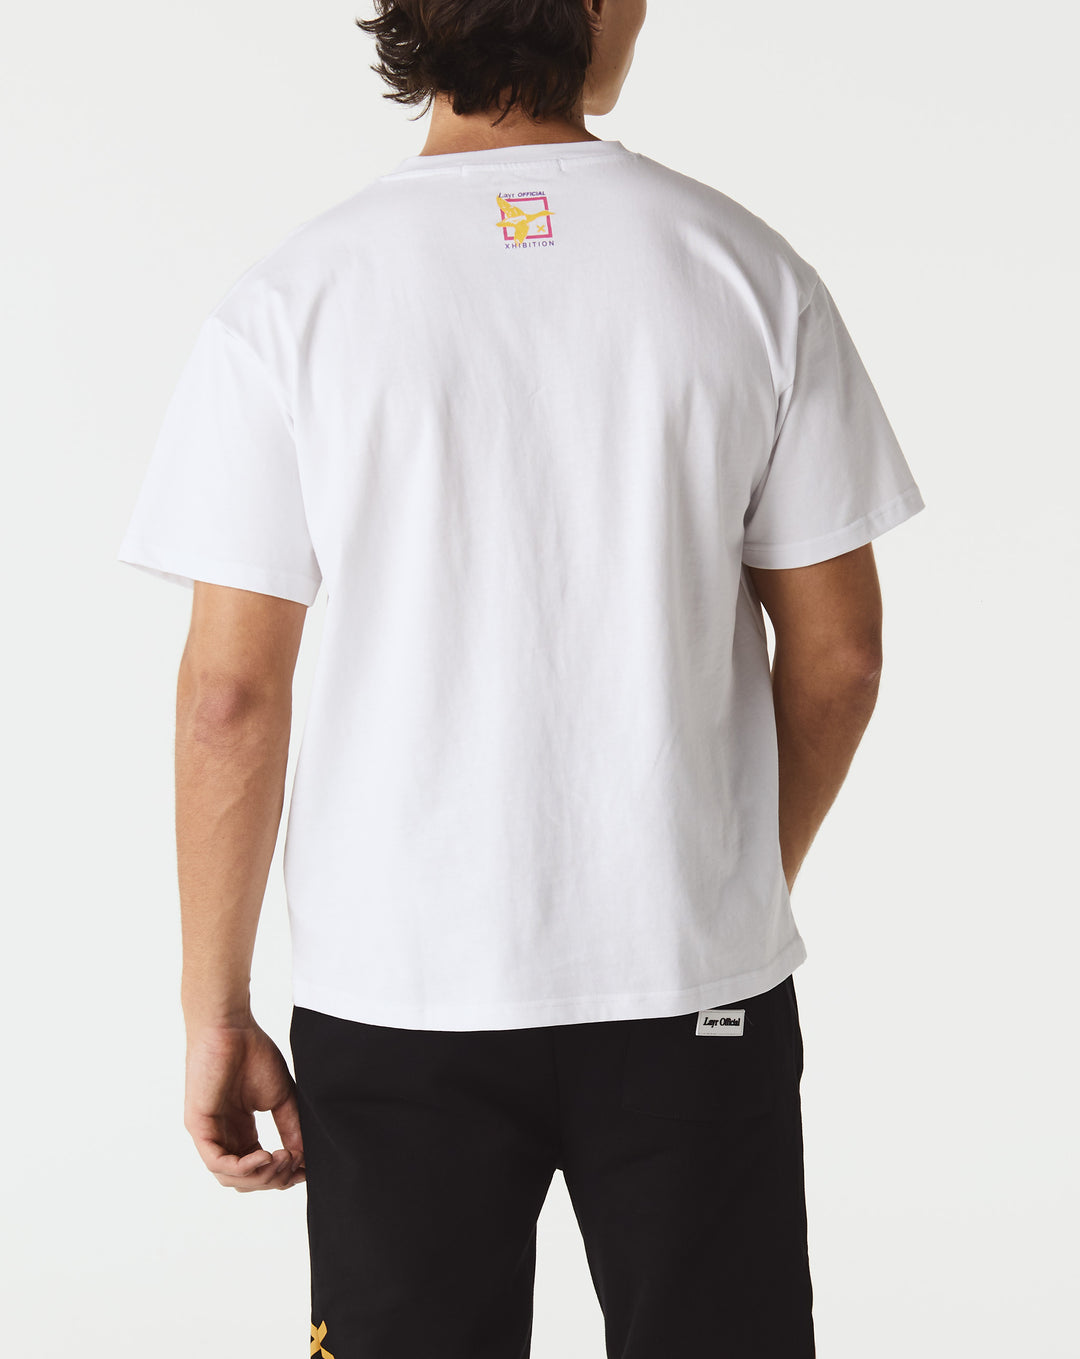 Layr Offical Carhartt WIP W Longsleeve Verse C T-Shirt I030661 WHITE BLACK  - Cheap Urlfreeze Jordan outlet